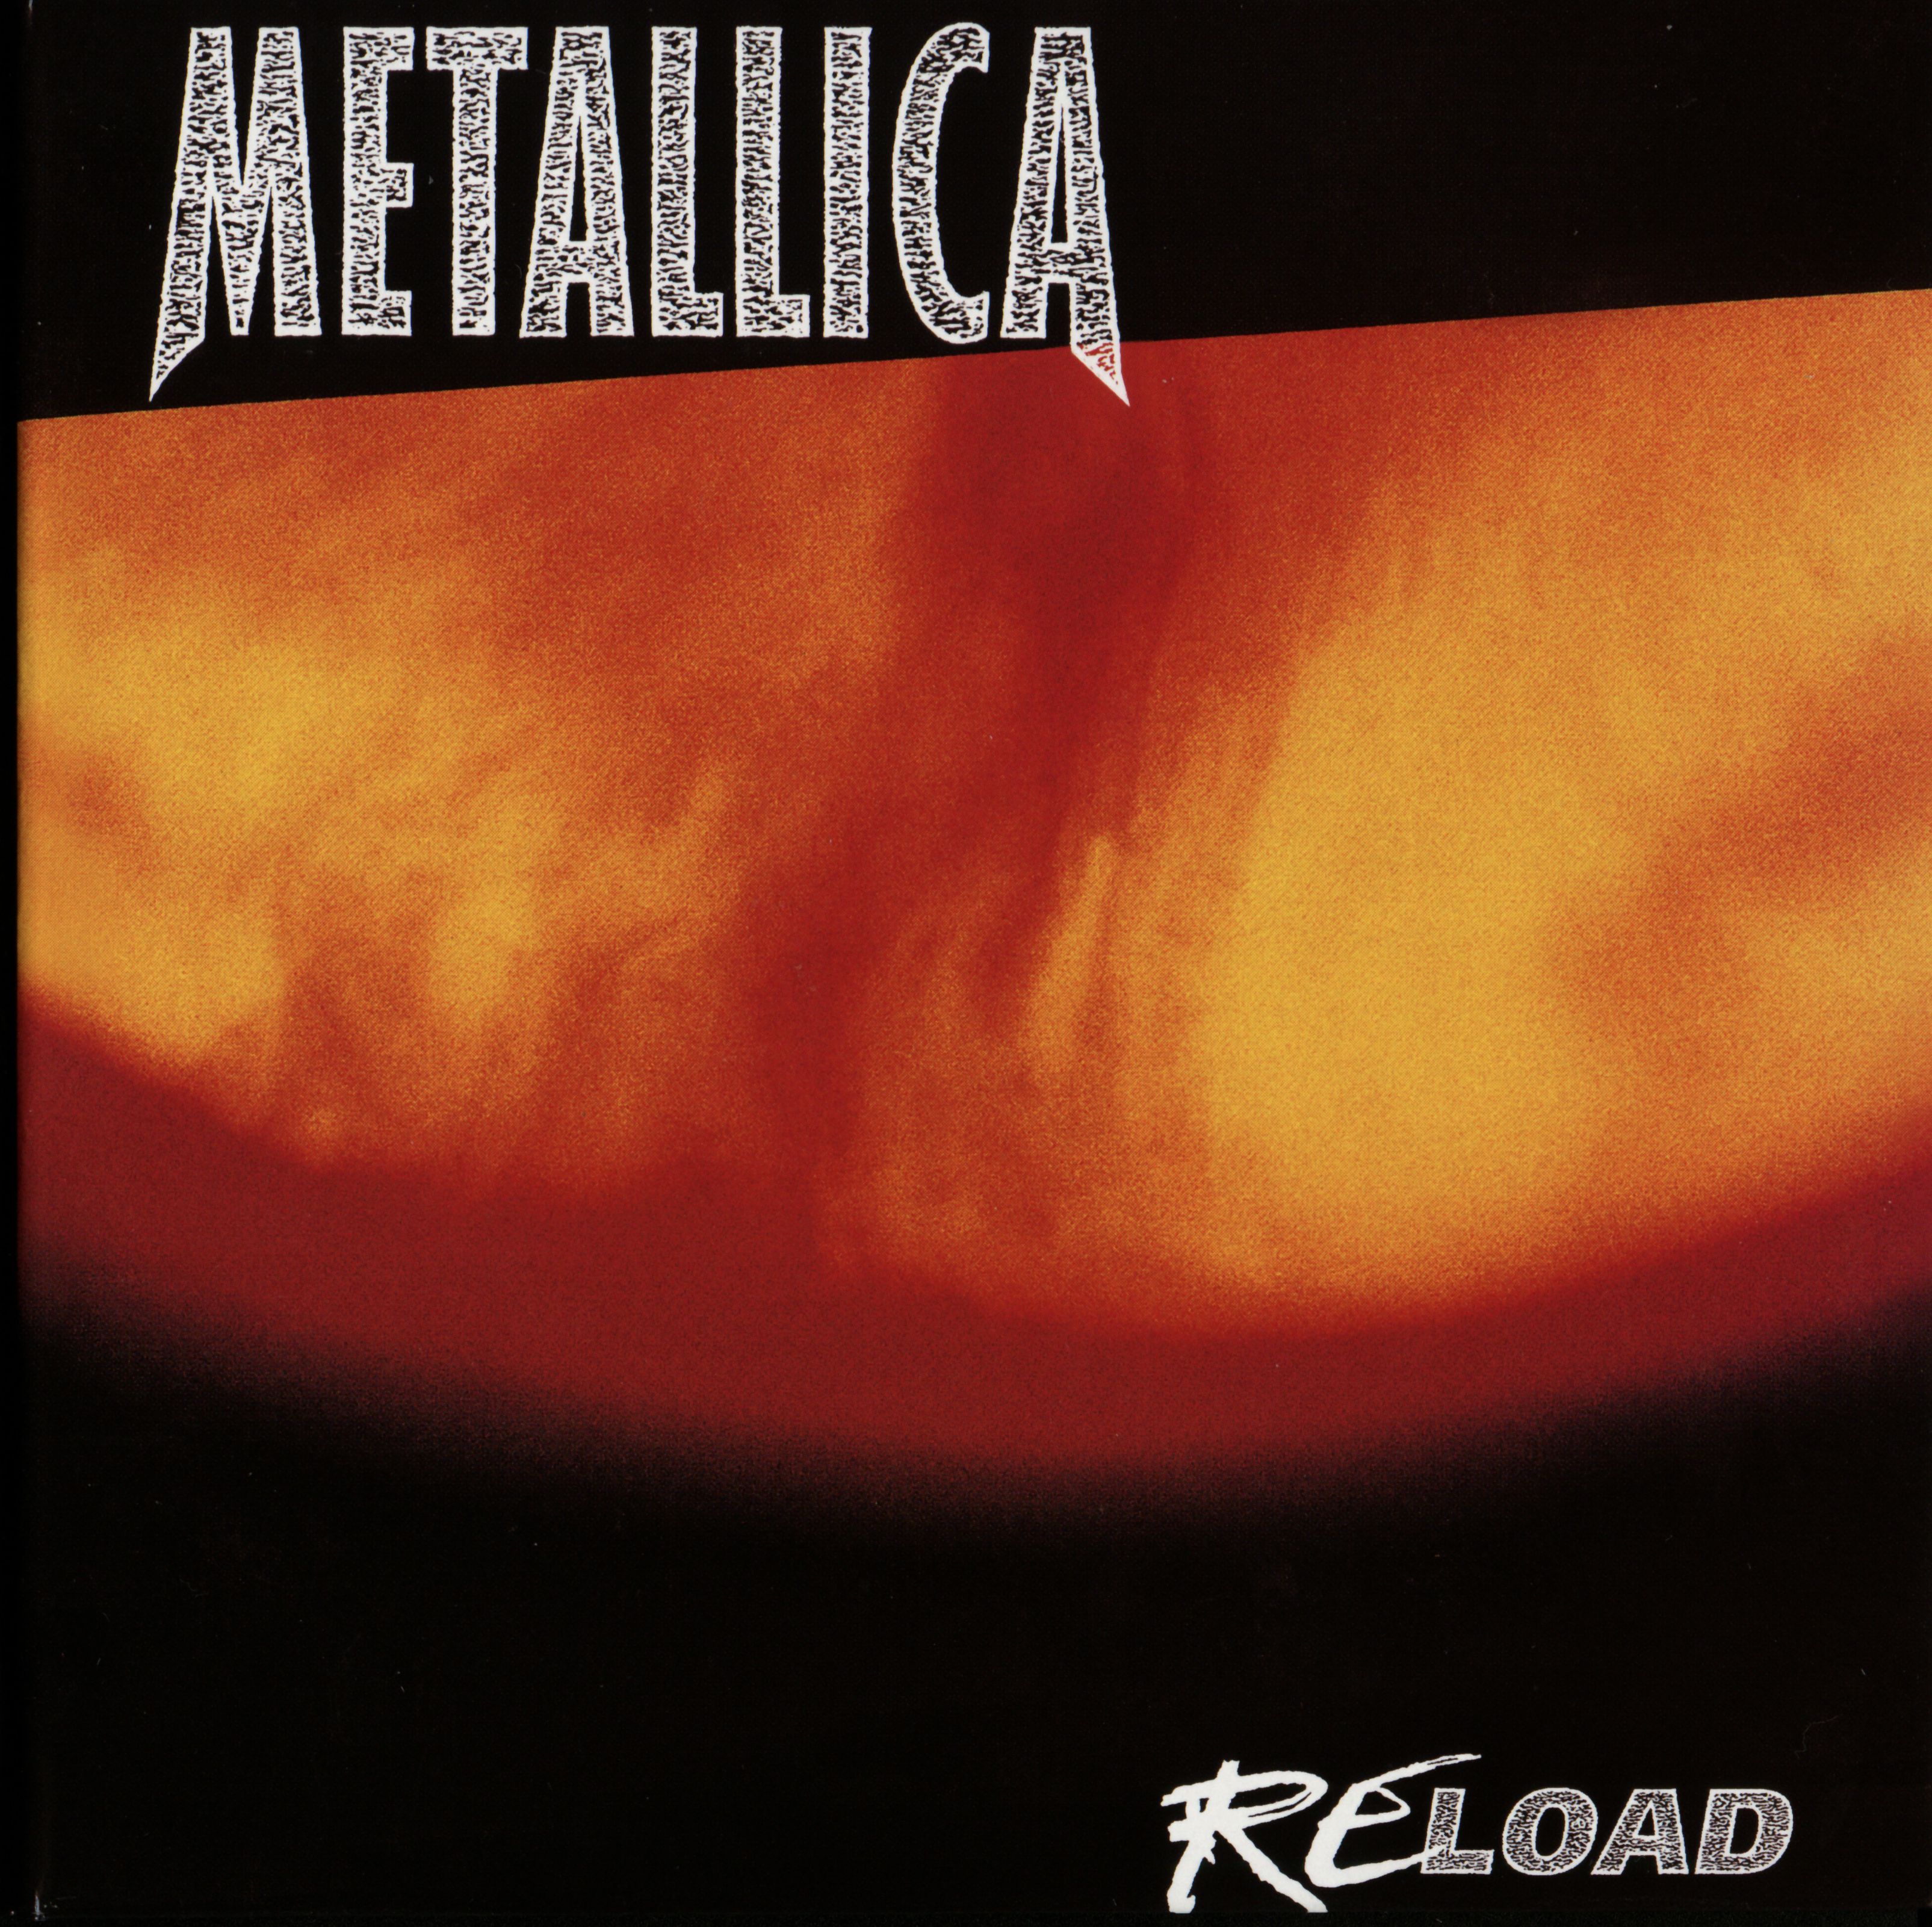 ซีดีเพลง CD Metallica 1997 - Reload (2006 Reissue),ในราคาพิเศษสุดเพียง159บาท